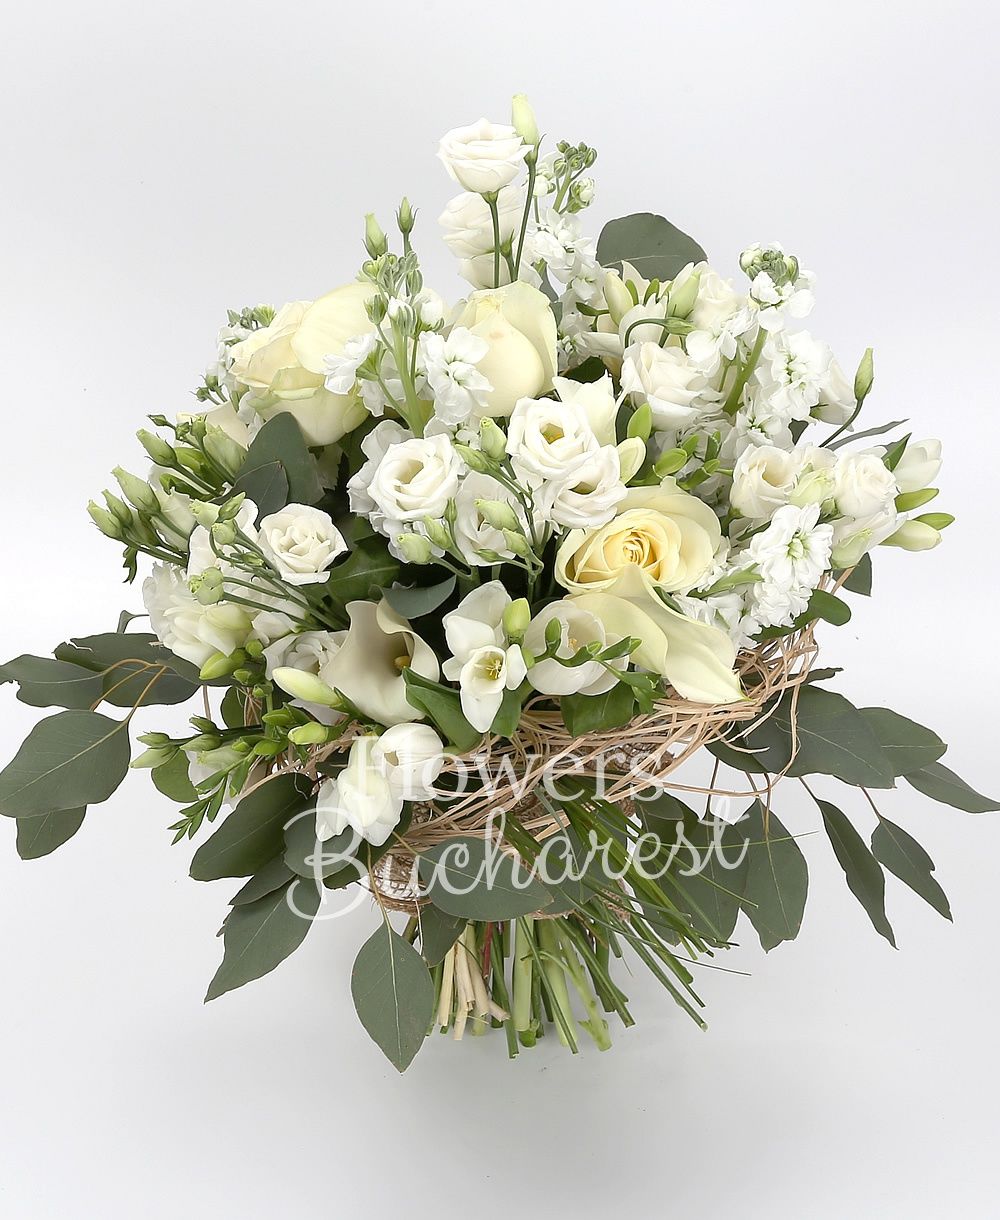 9 white roses, 5 white cala, 5 white mathiolla, 5 white lisianthus, 10 white freesias, 10 white tulips, greenery